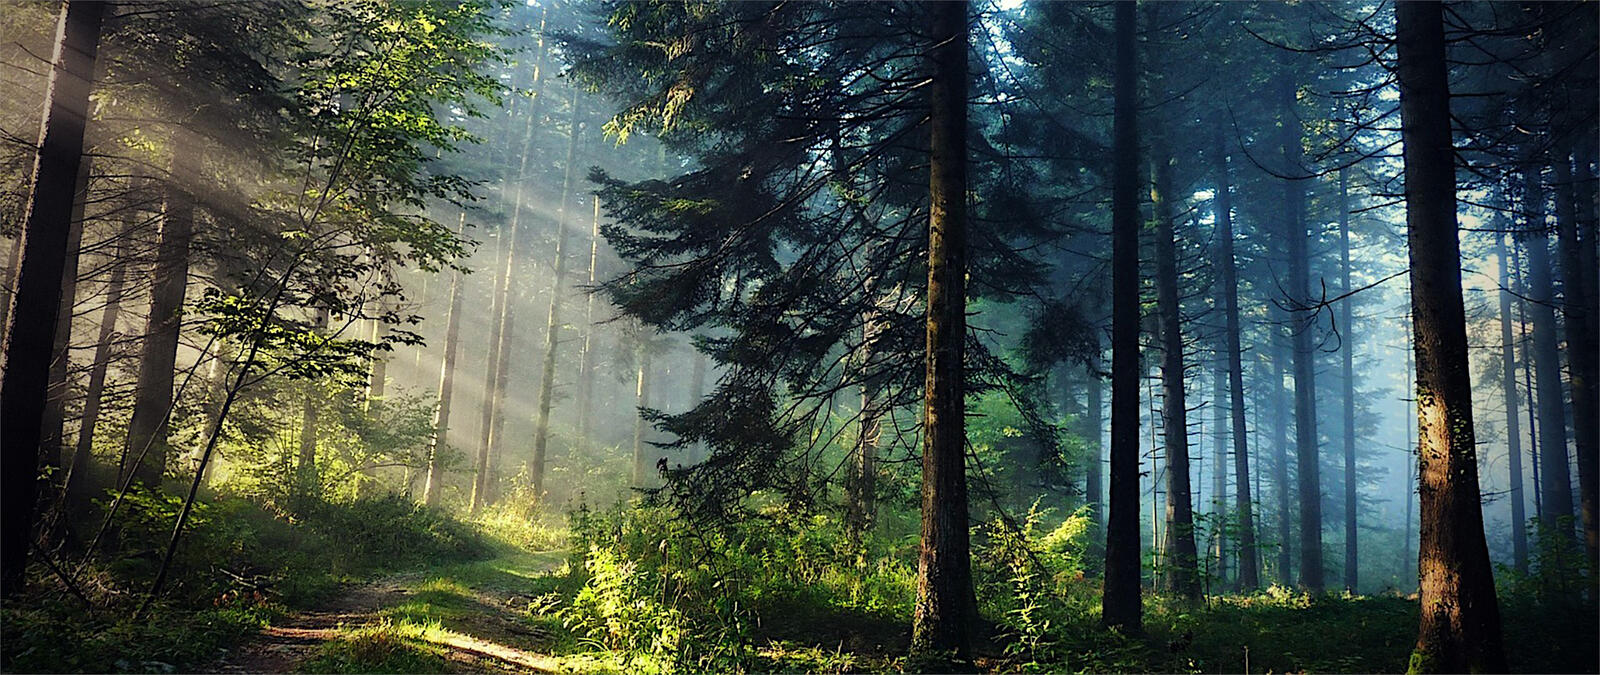 Бесплатное фото Солнечные лучи освещают грунтовую дорогу в хвойном лесу